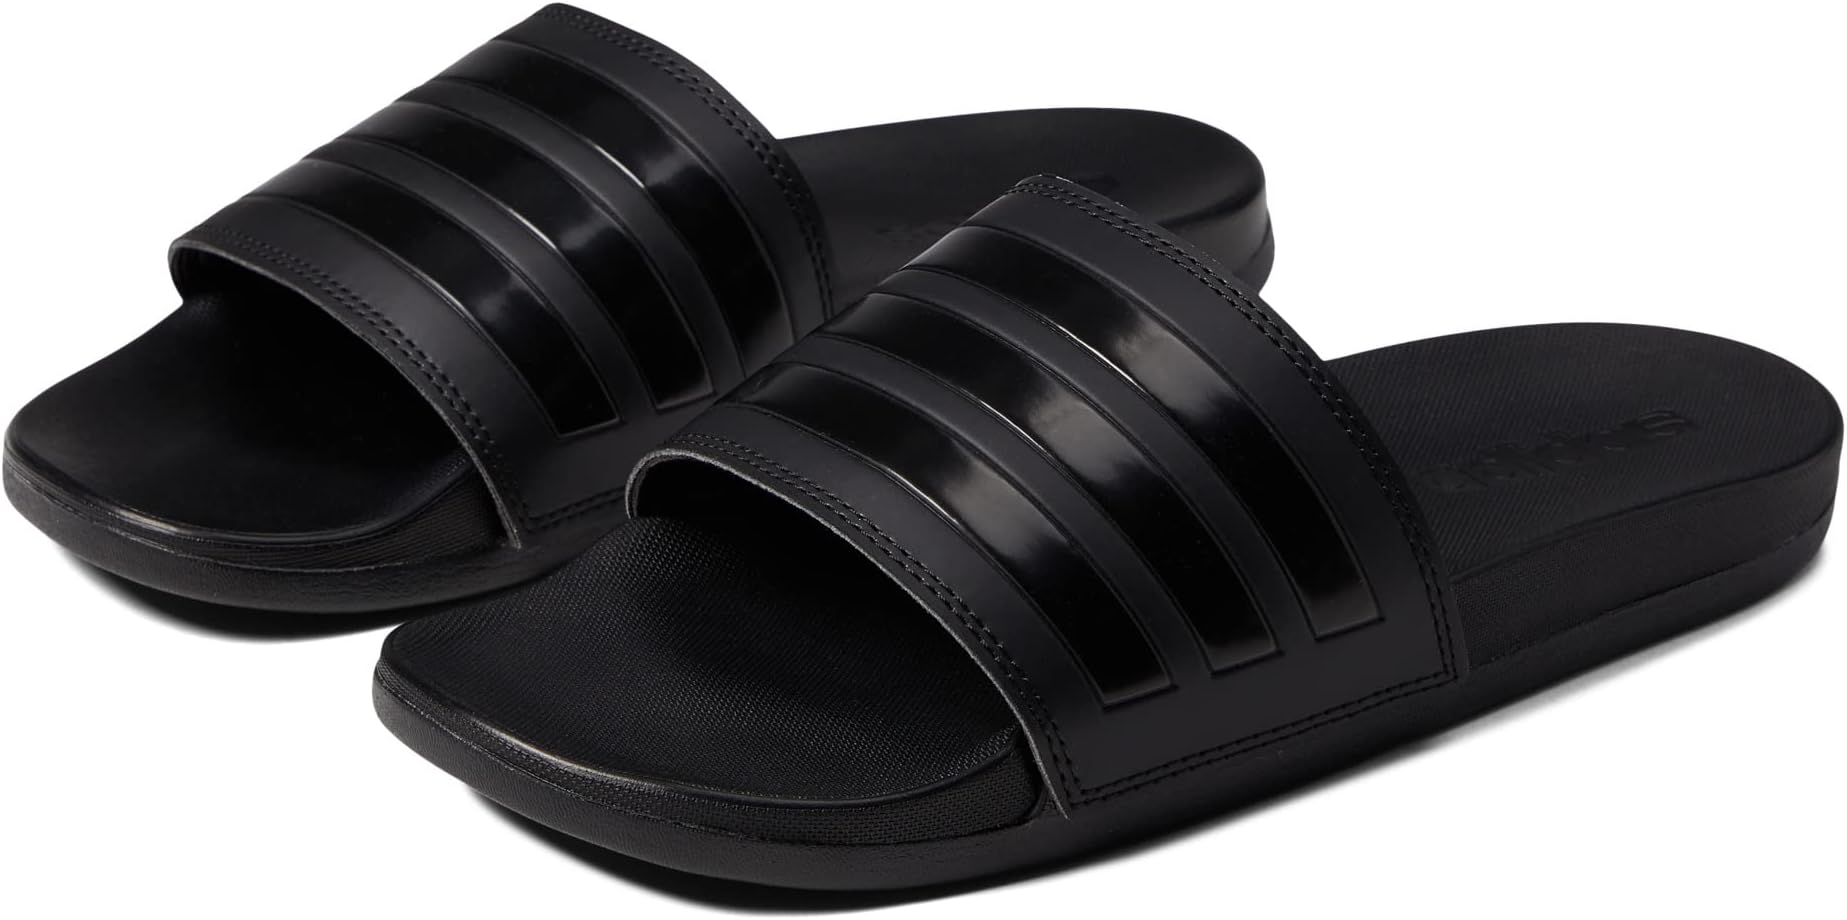 цена Шлепанцы Adilette Comfort Slides adidas, цвет Black/Black/Black 1